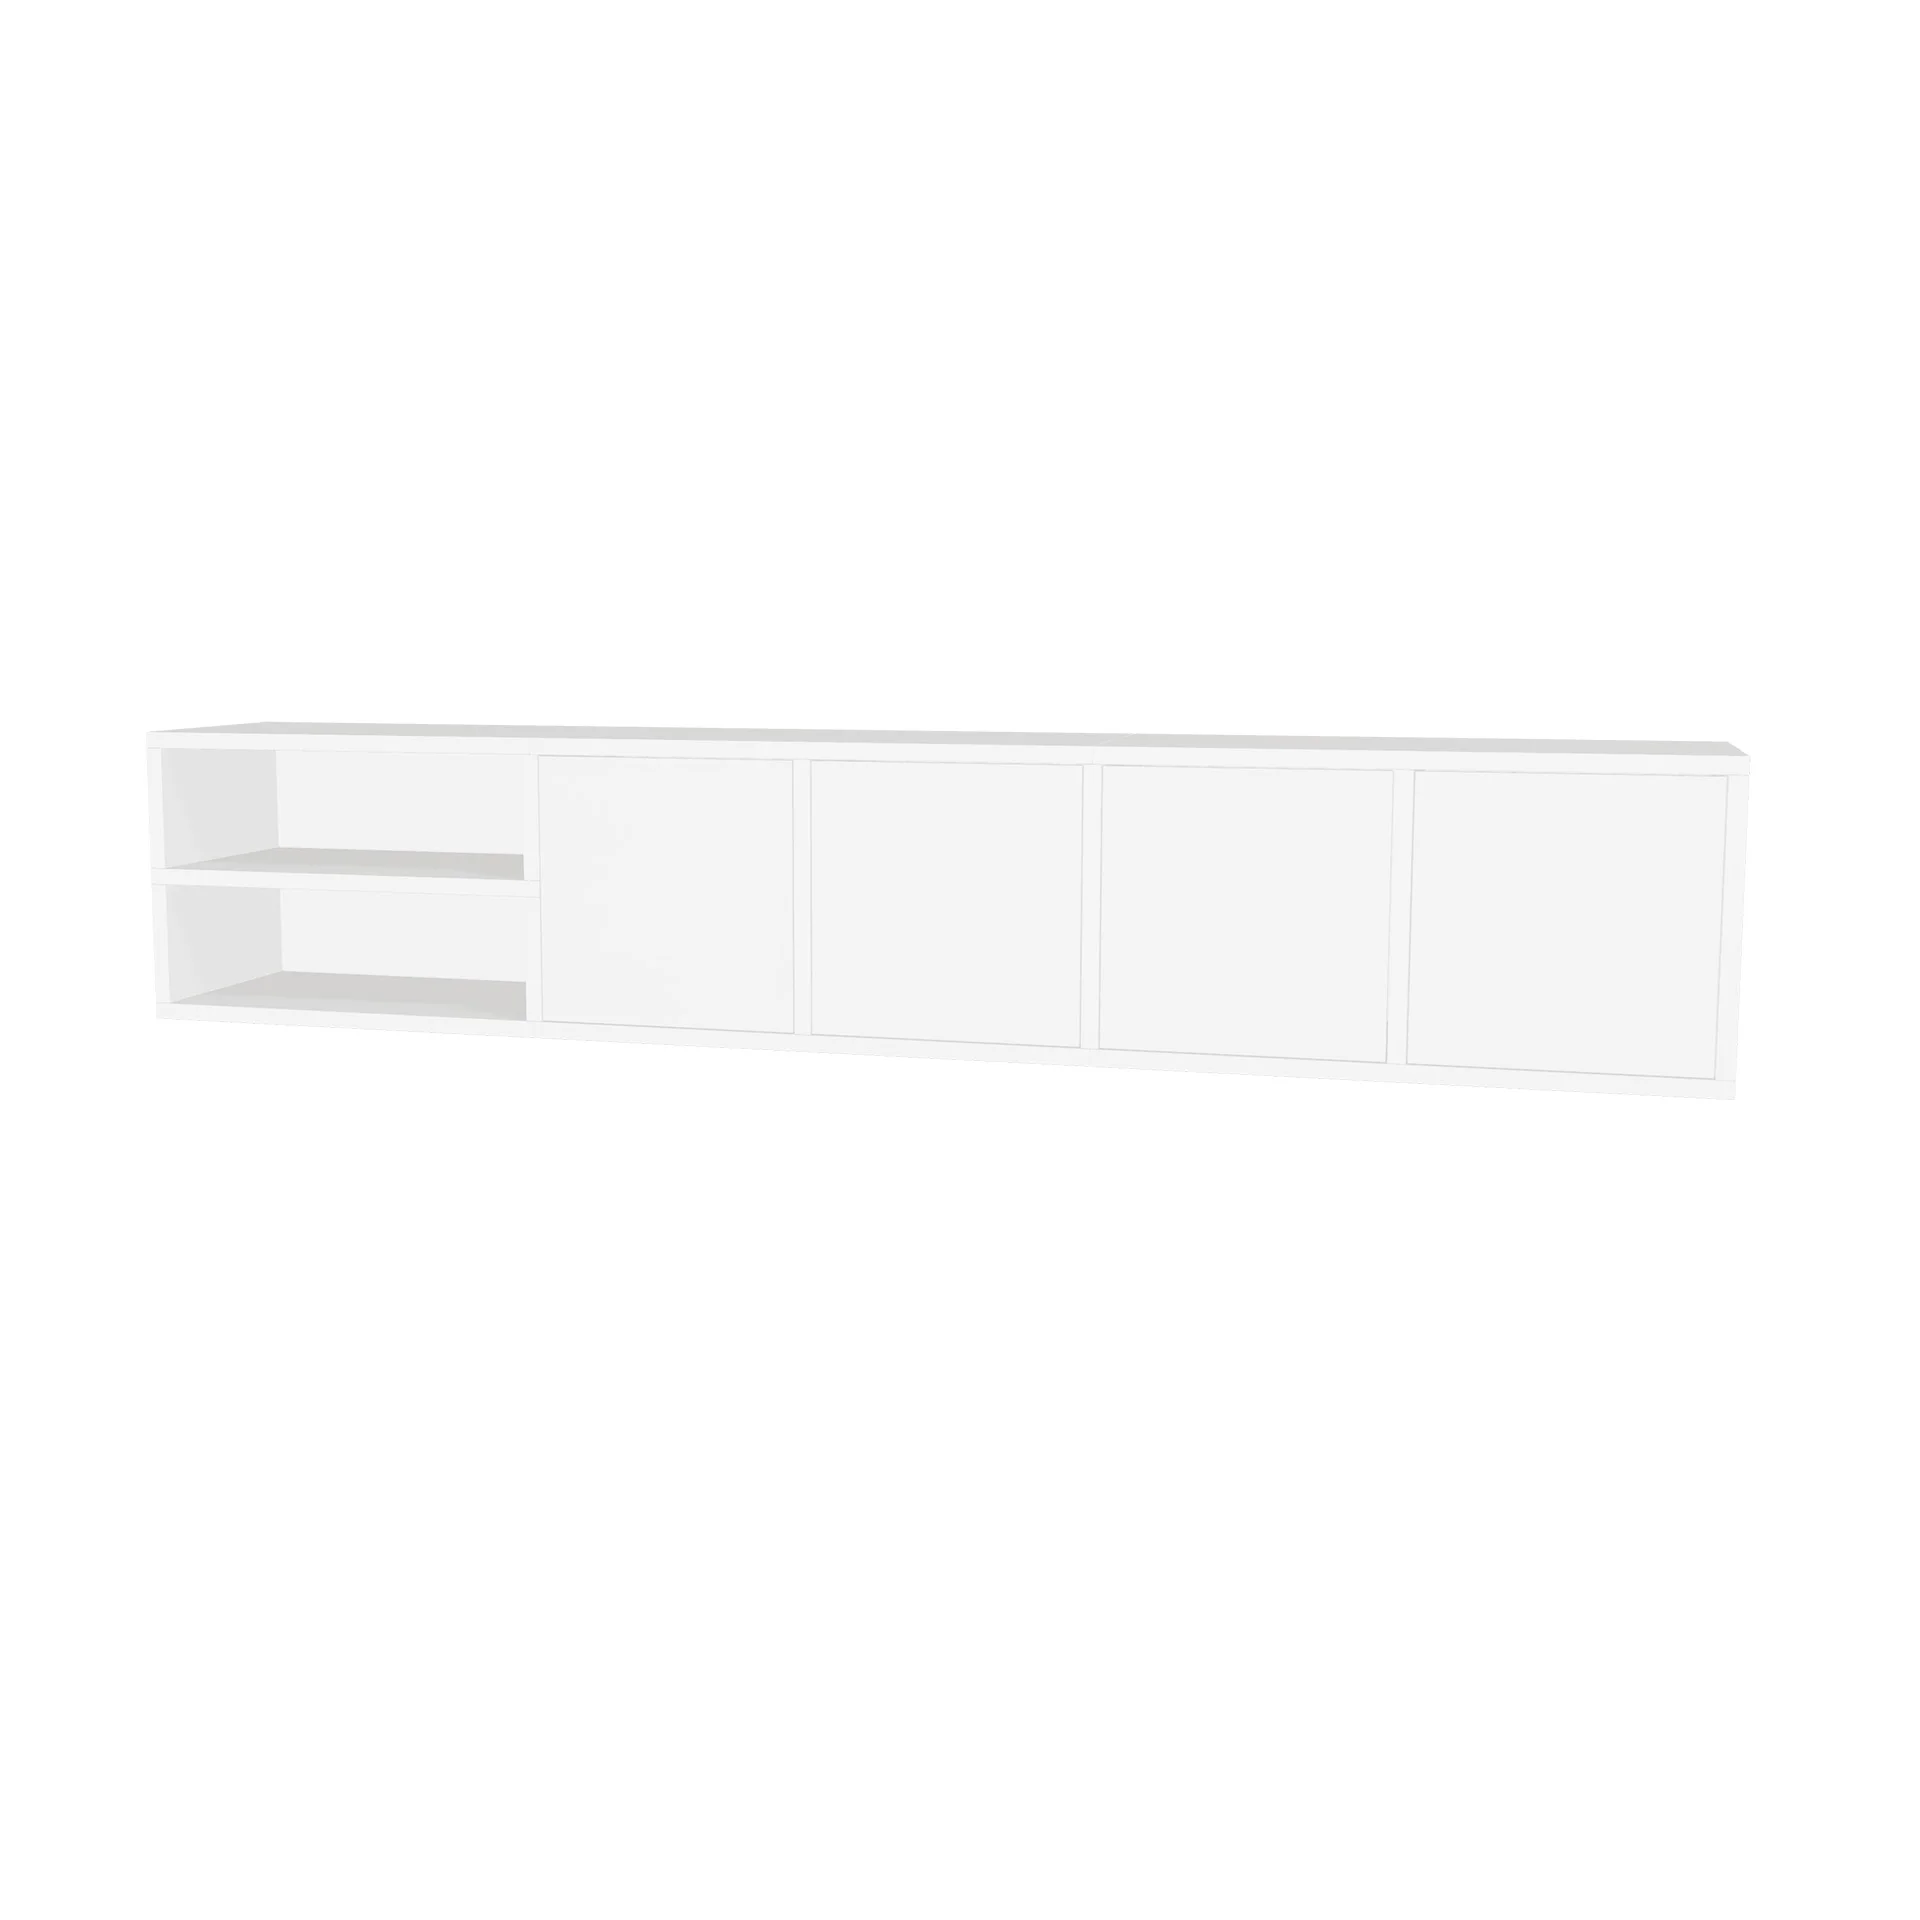 TSFC022 in white furniture board